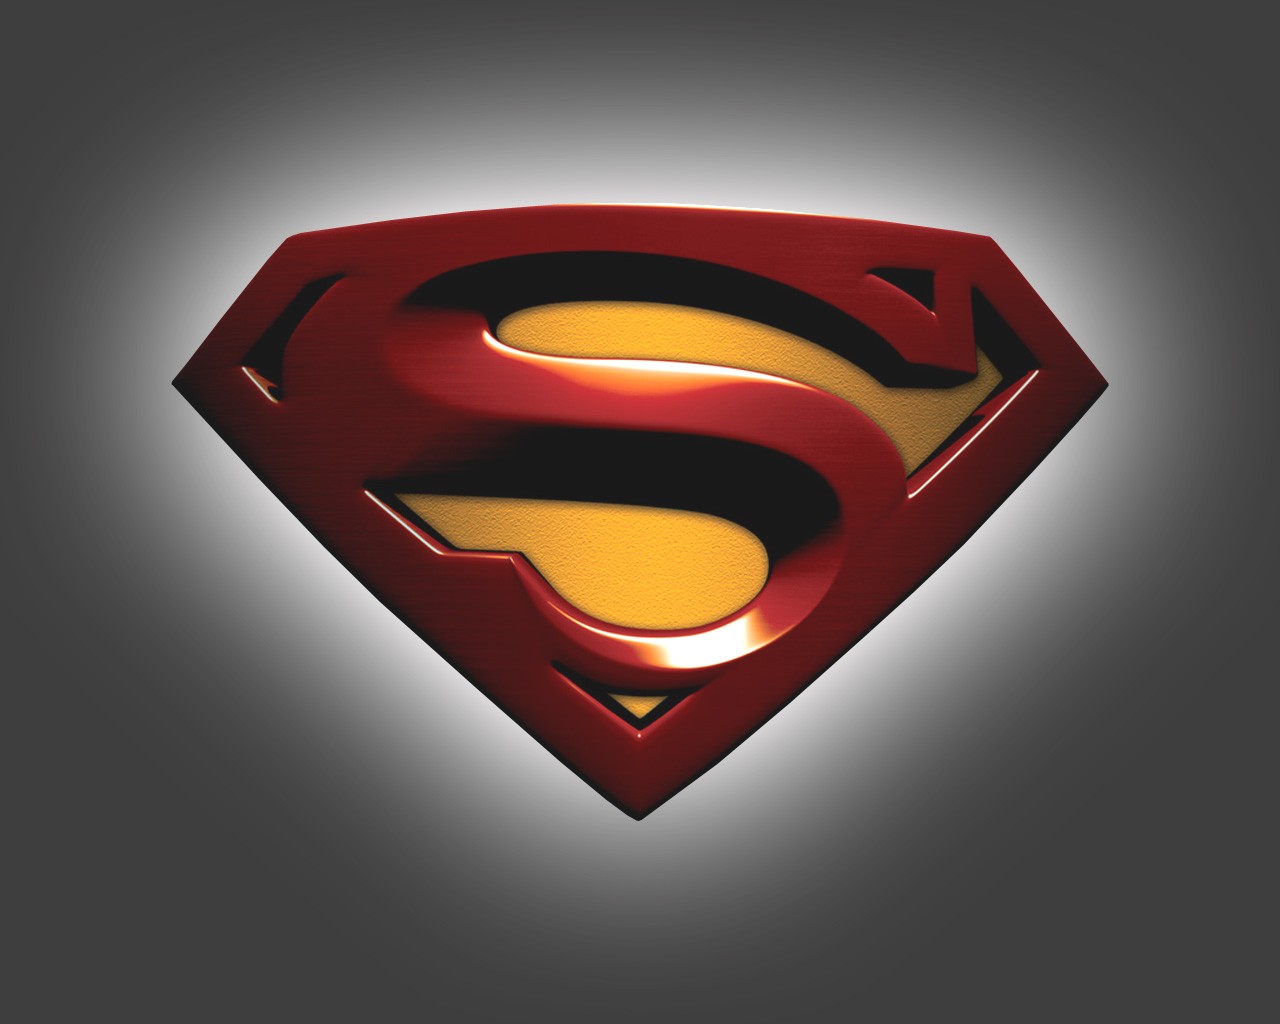 슈퍼맨 로고 벽지,슈퍼맨,슈퍼 히어로,소설 속의 인물,사법 리그,상징